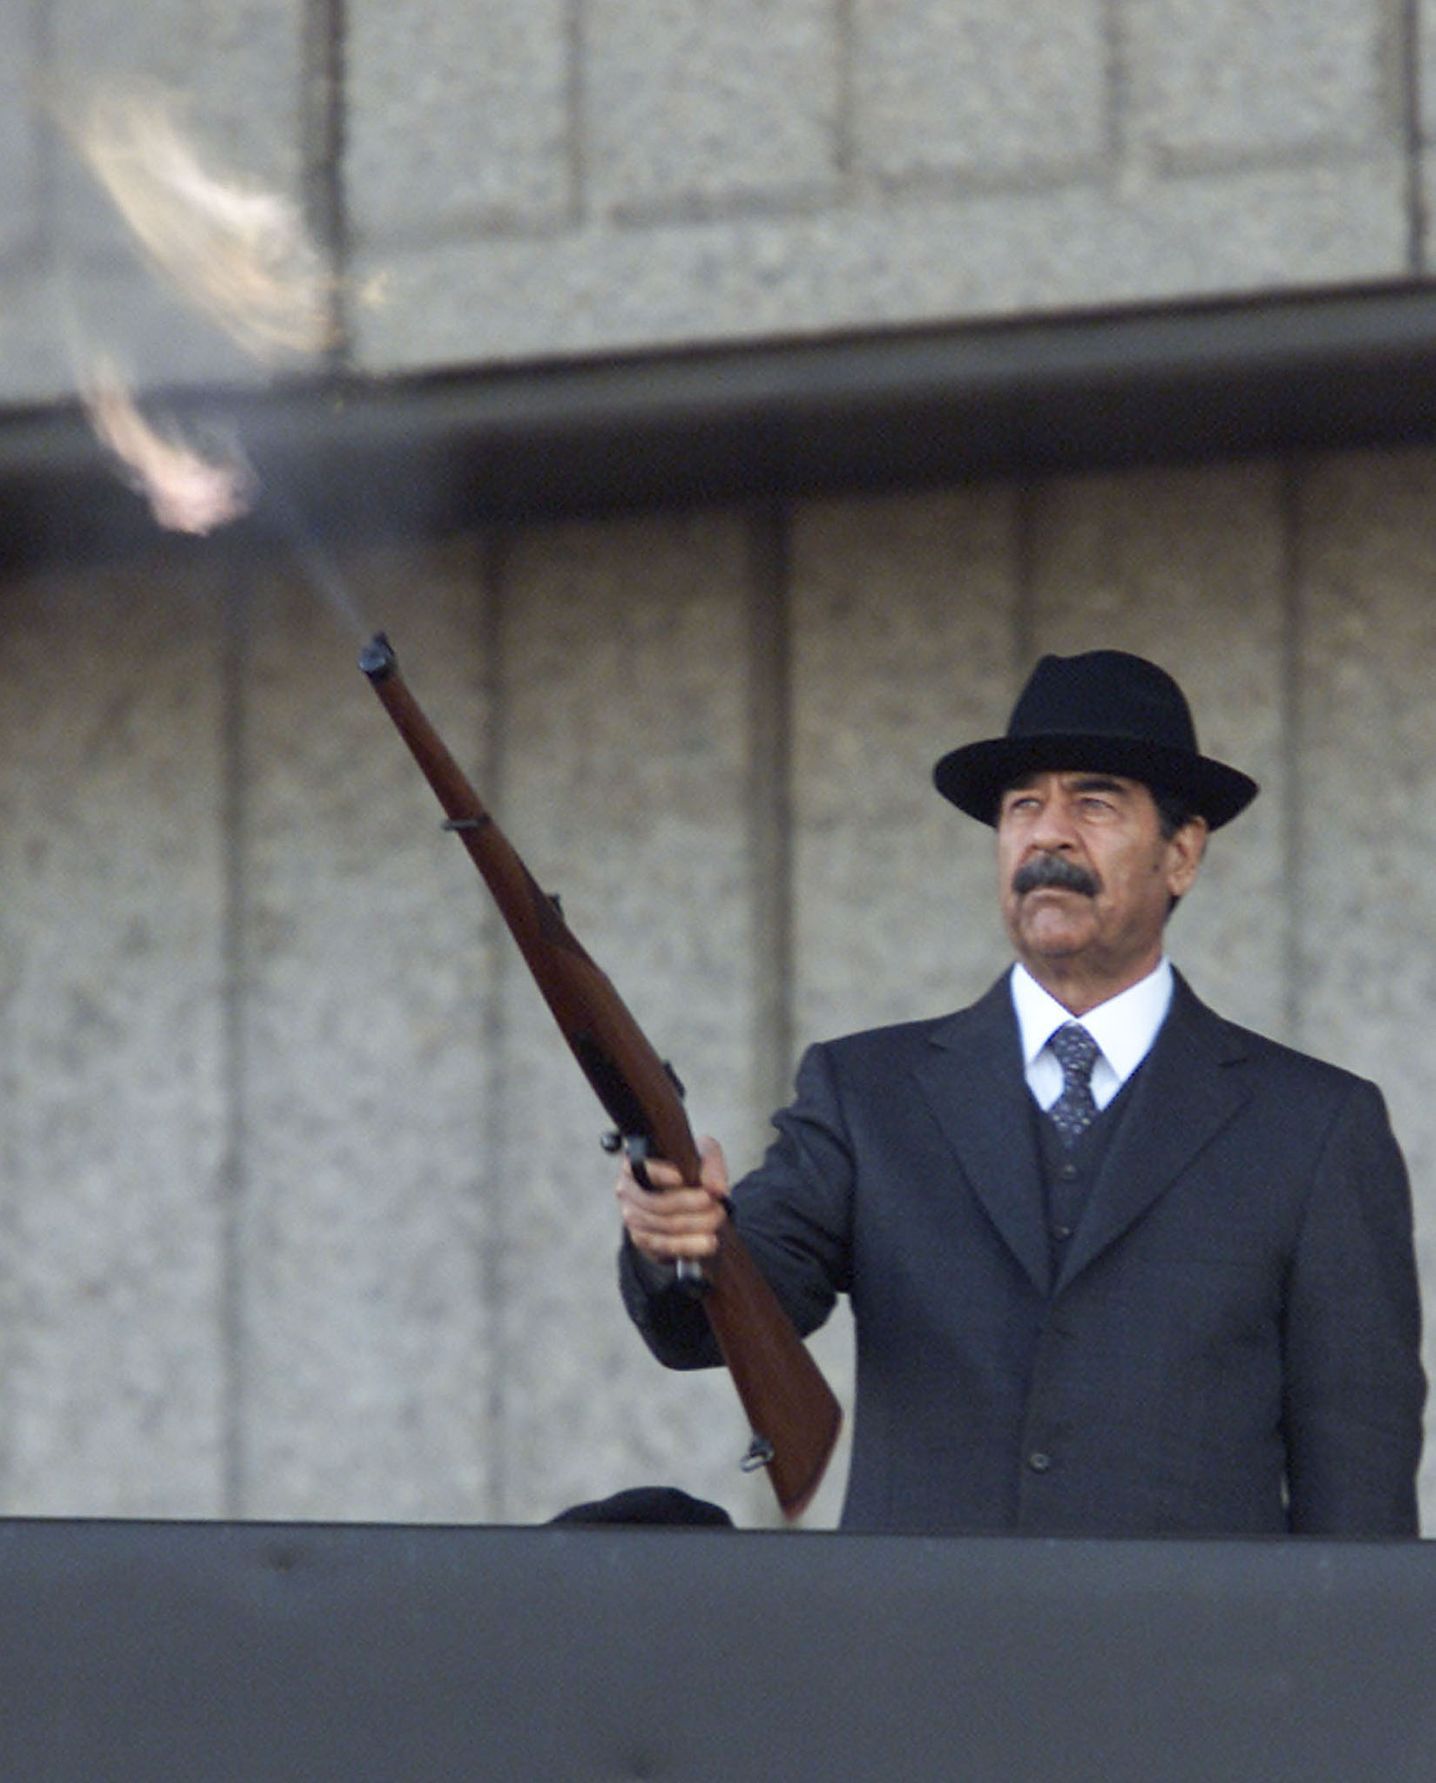 Fotogalerie / Život a smrt Saddáma Husajna / Reuters